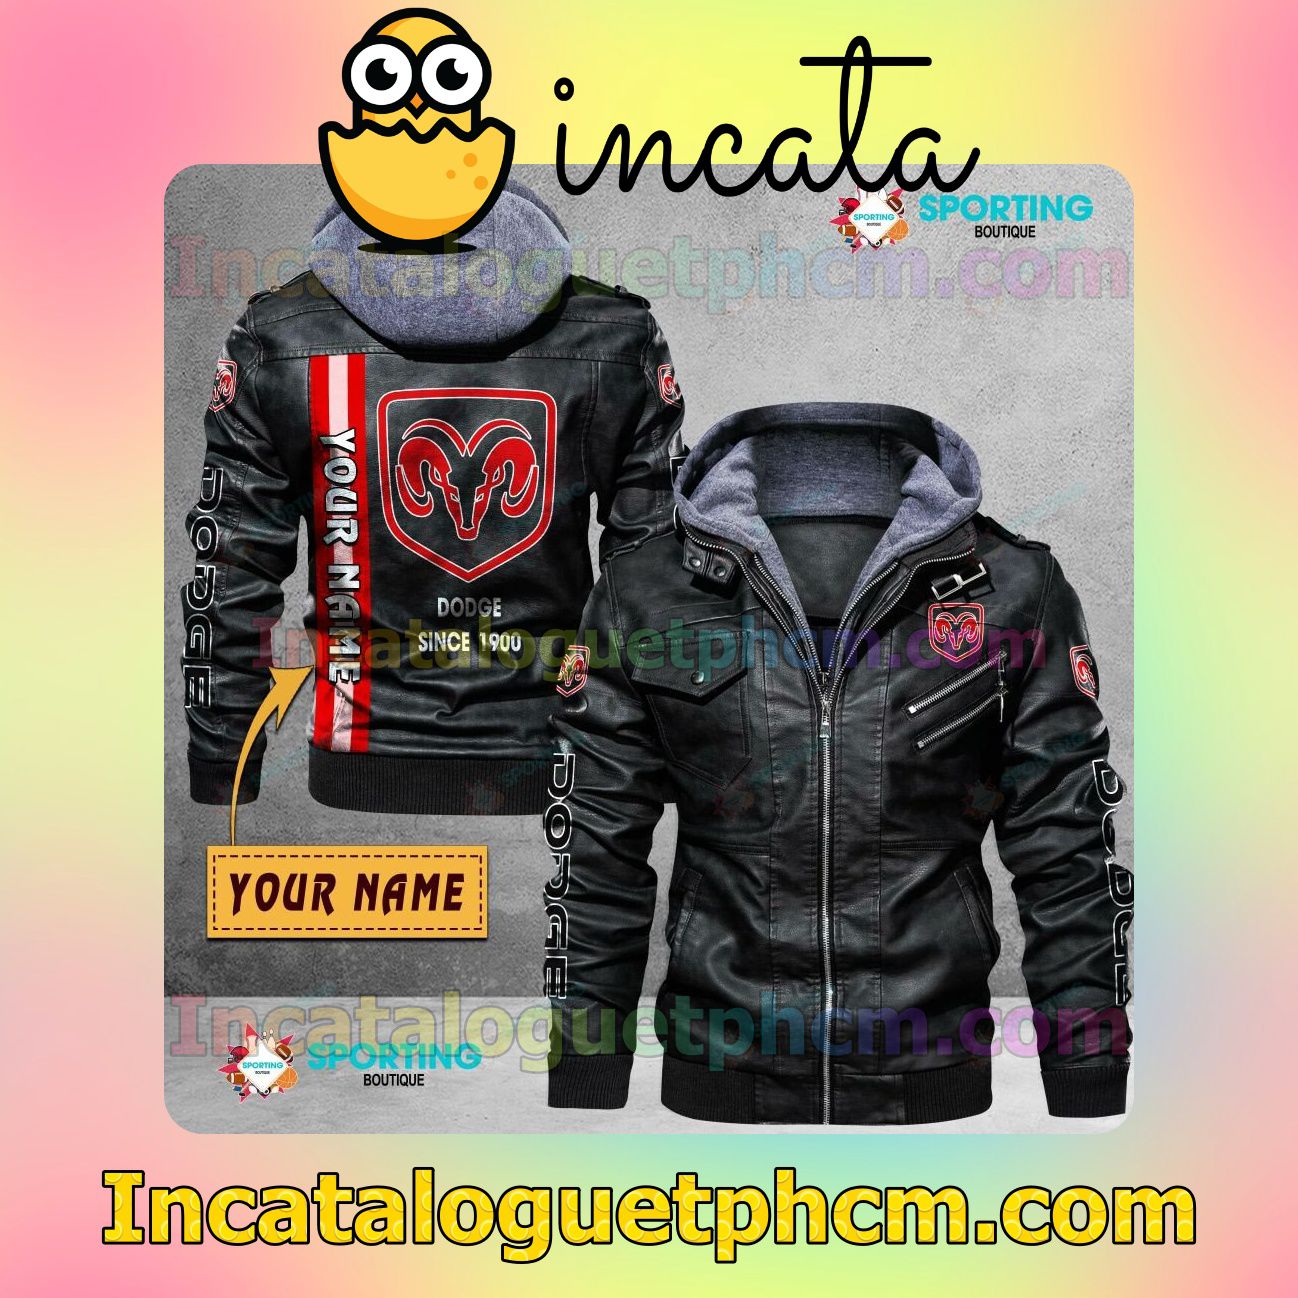 Dodge Customize Brand Uniform Leather Jacket